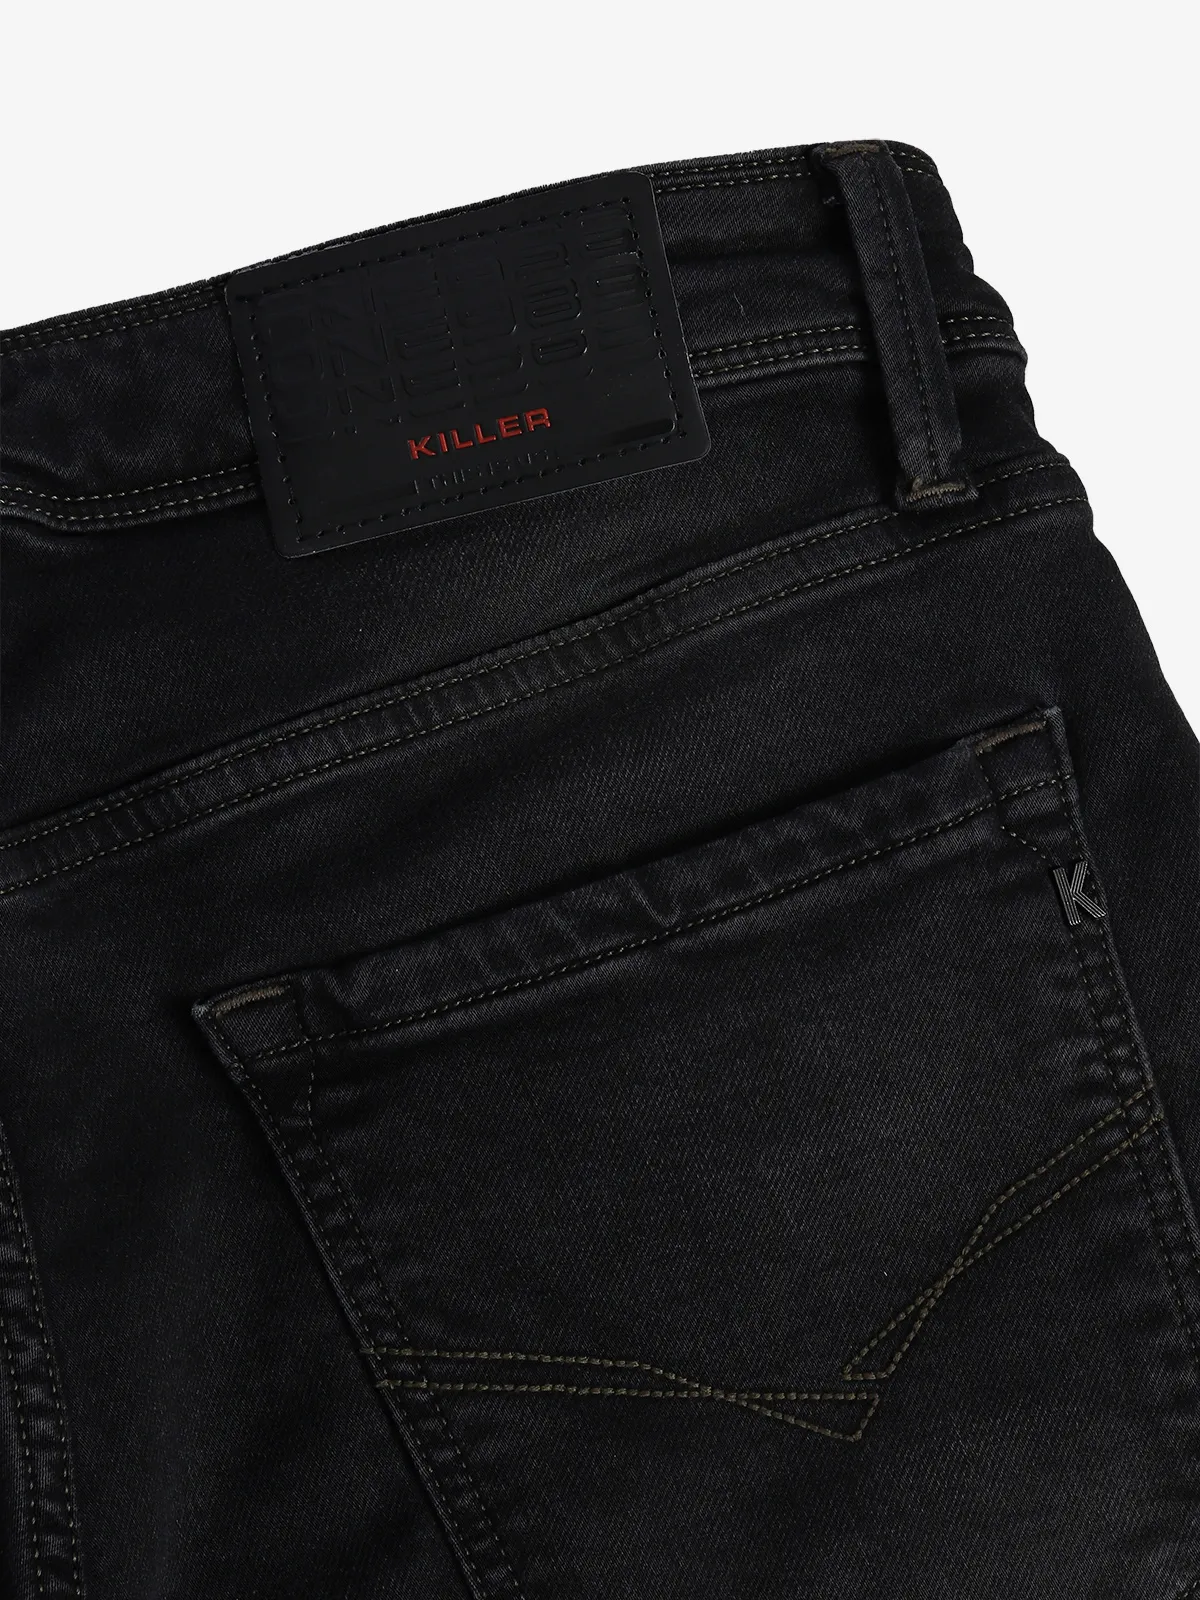 Killer dark grey denim skinny fit jeans